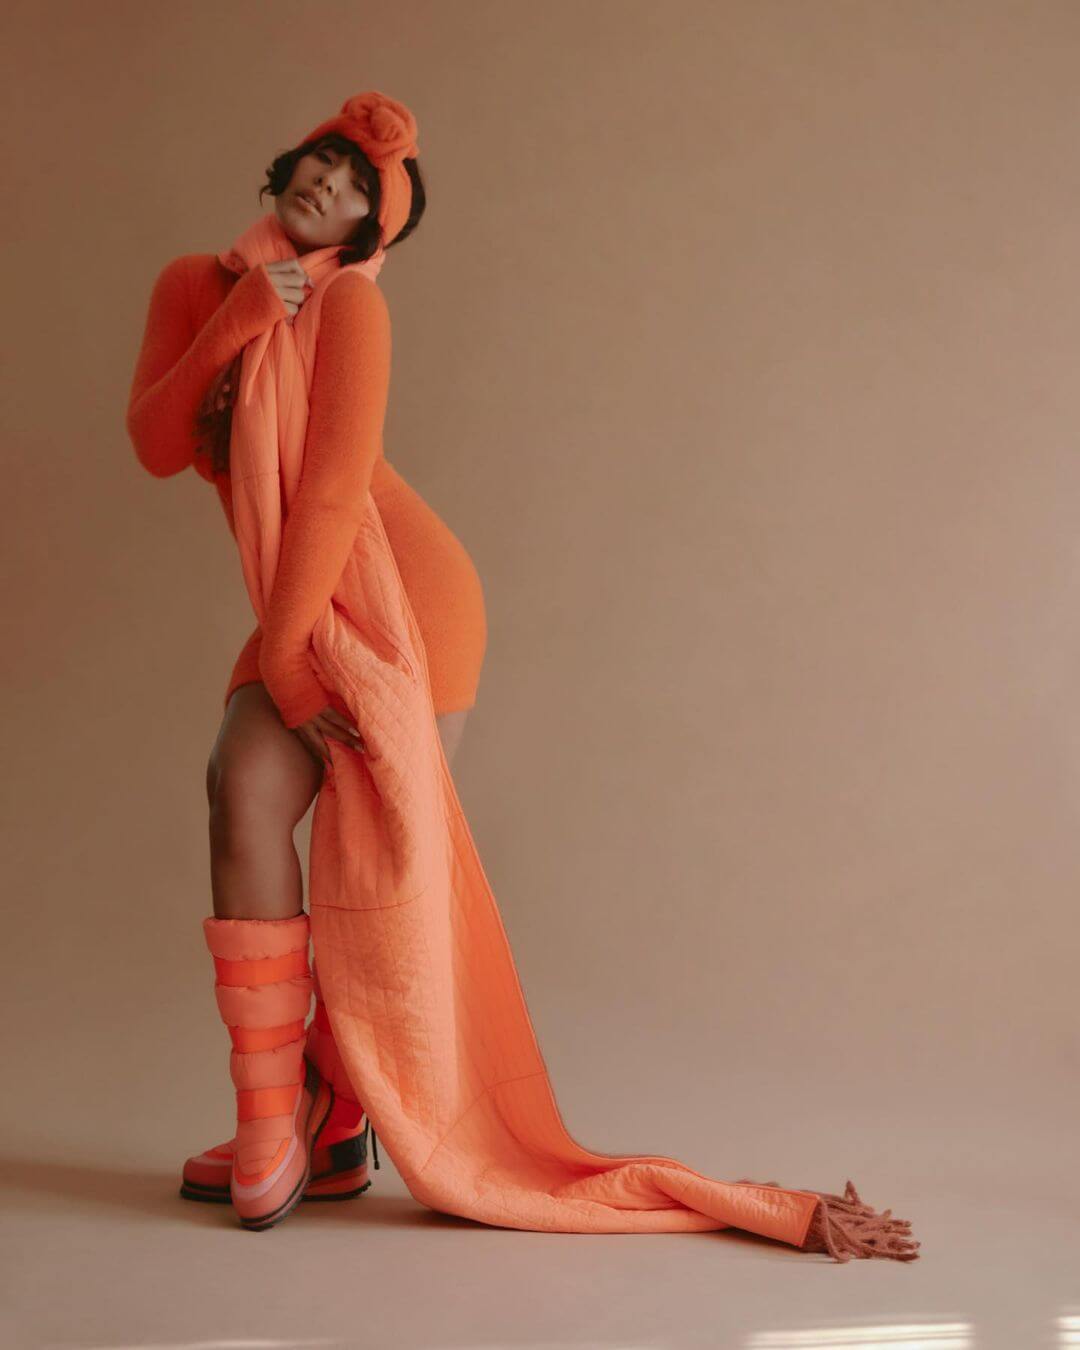 Parker McKenna Posey Shines in a Bright Orange Statement Look for Schon magazine Photoshoot